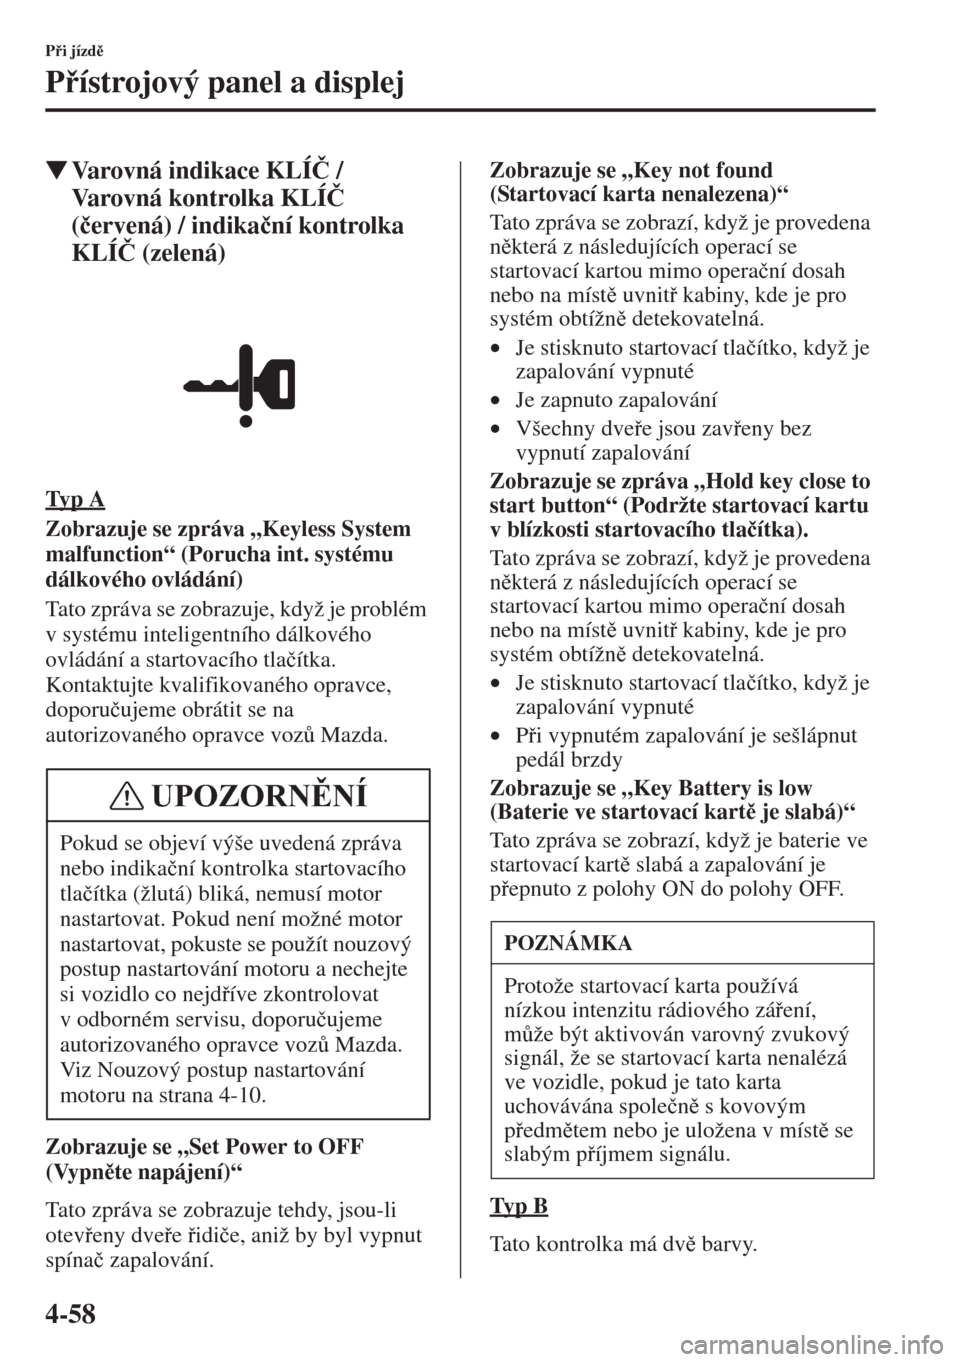 MAZDA MODEL CX-5 2015  Návod k obsluze (in Czech) 4-58
Pi jízd
Pístrojový panel a displej
�WVarovná indikace KLÍ�ý / 
Varovná kontrolka KLÍ�ý 
(�þervená) / indika�þní kontrolka 
KLÍ�ý (zelená)
Ty p  A
Zobrazuje se zpráva „Key